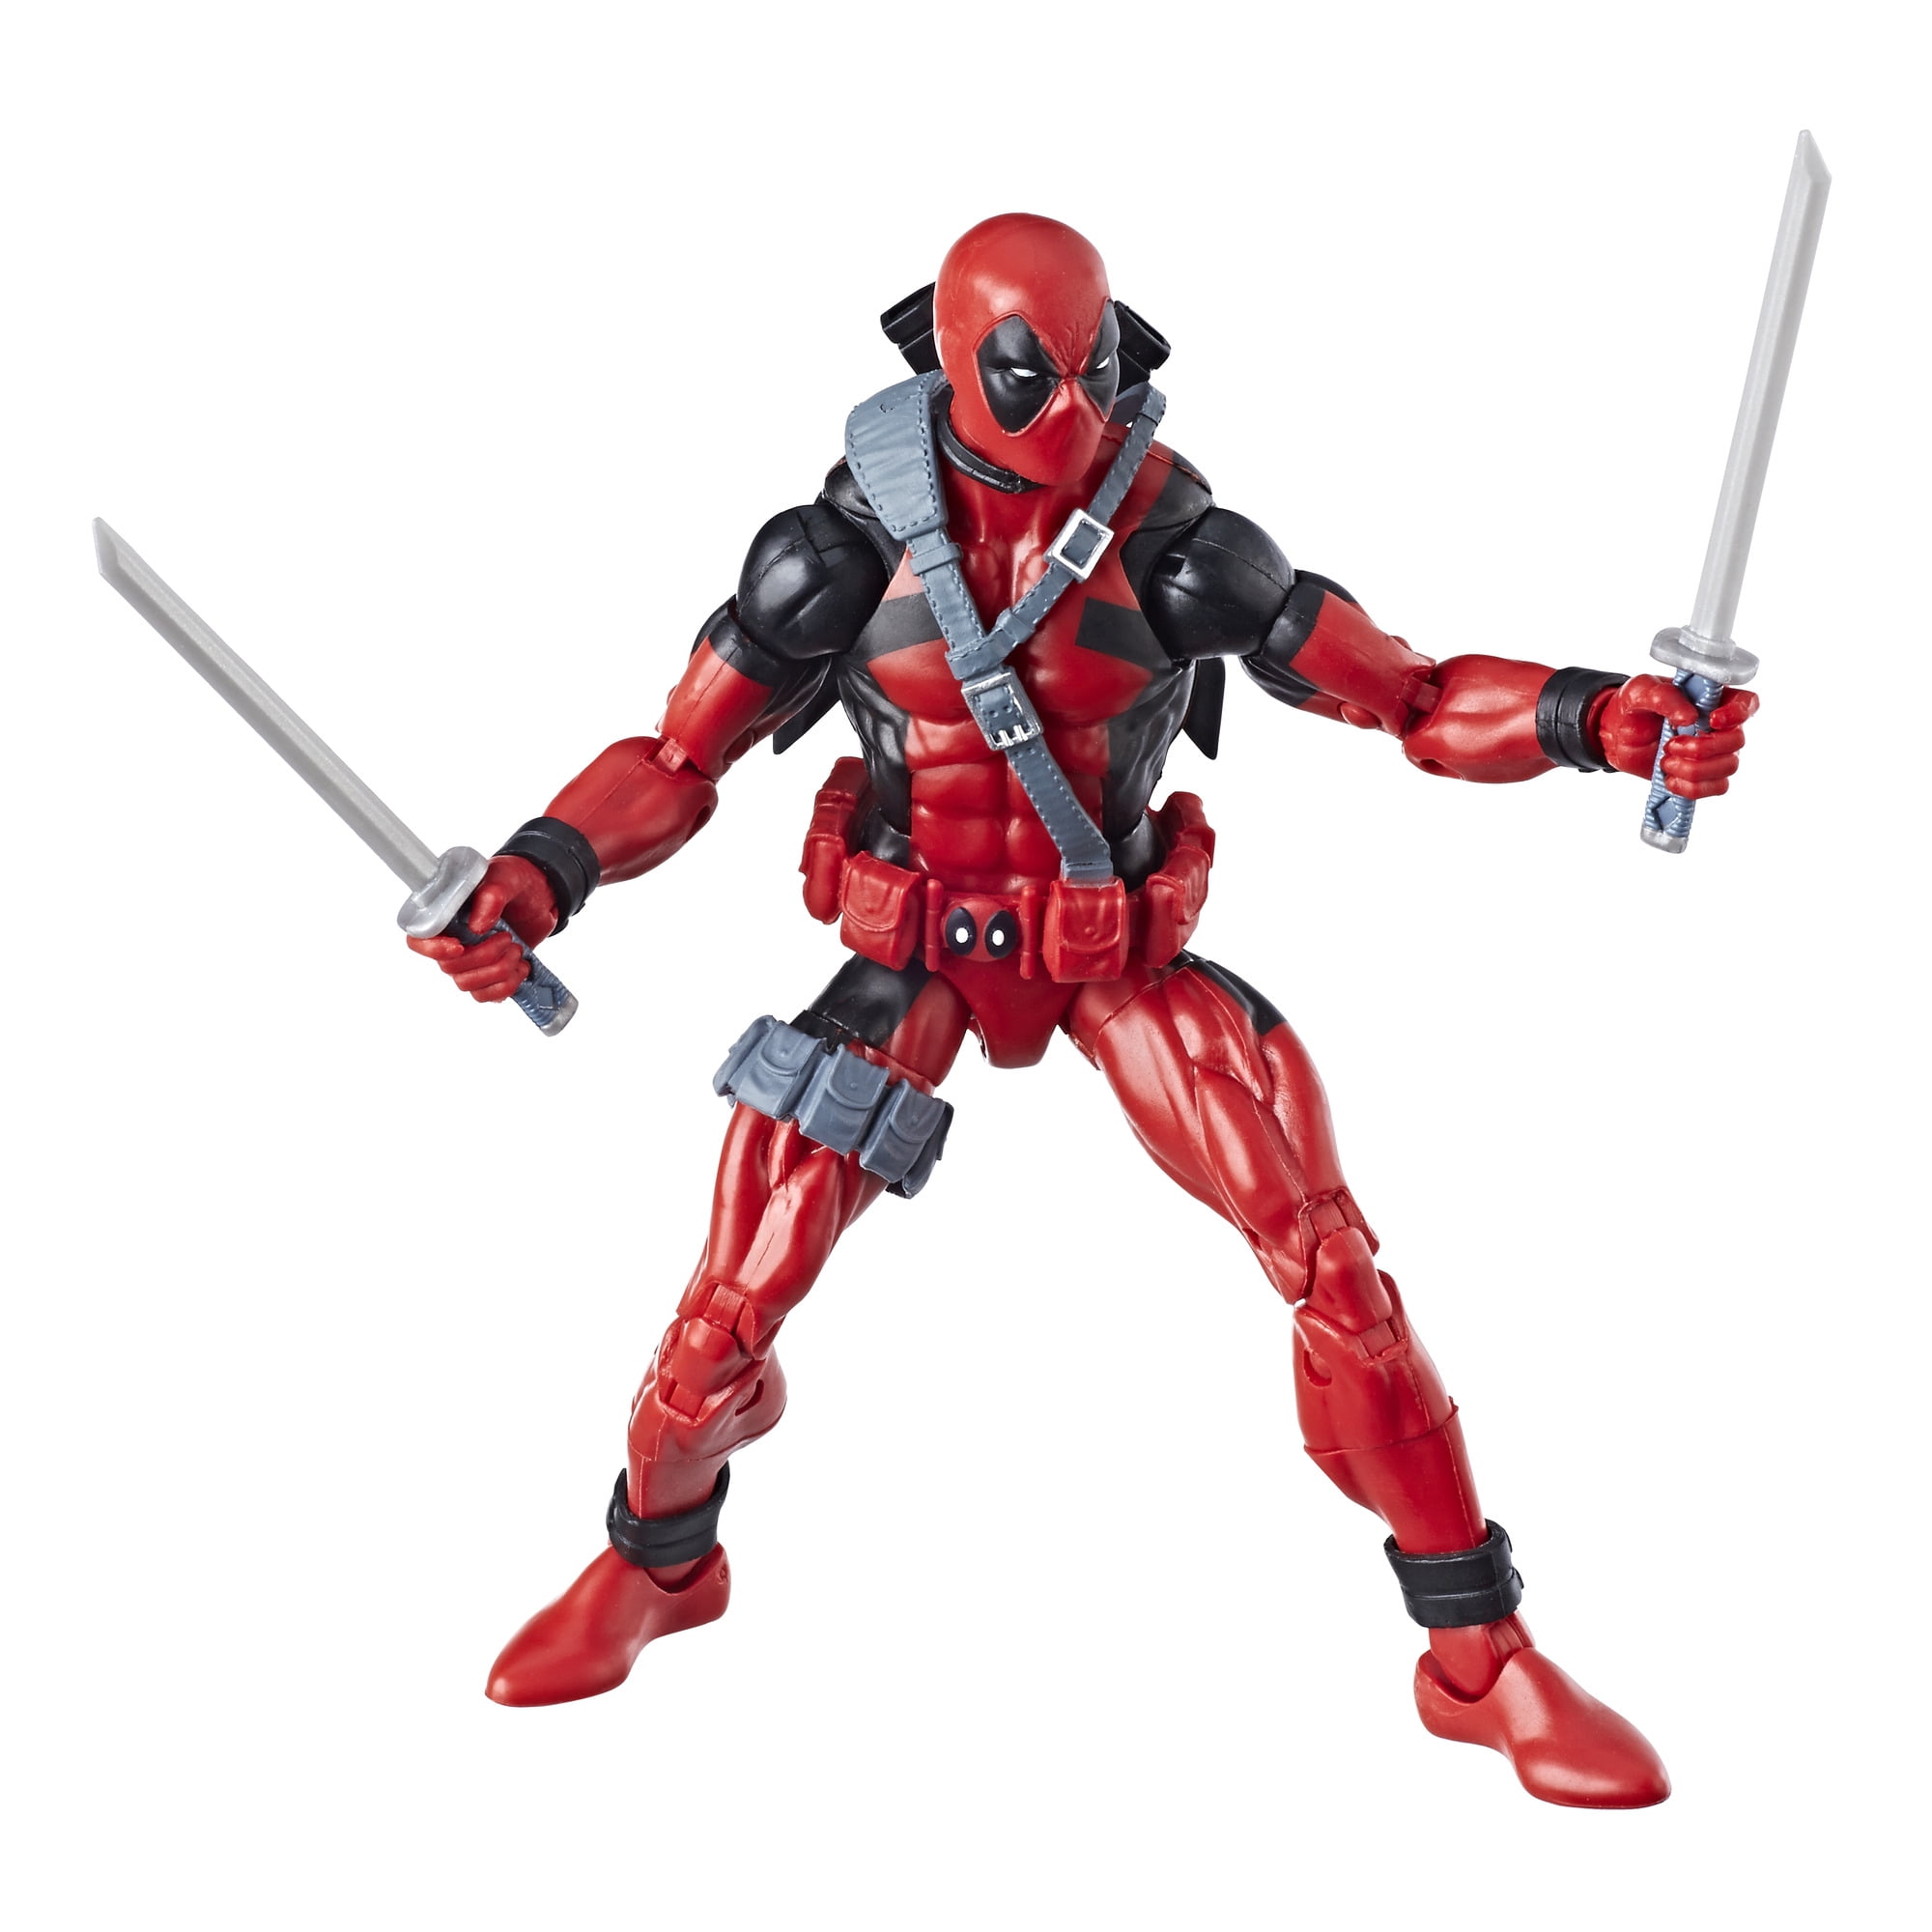 6" Marvel Superheroes Deadpool Action Figure Toys Kid GIft 